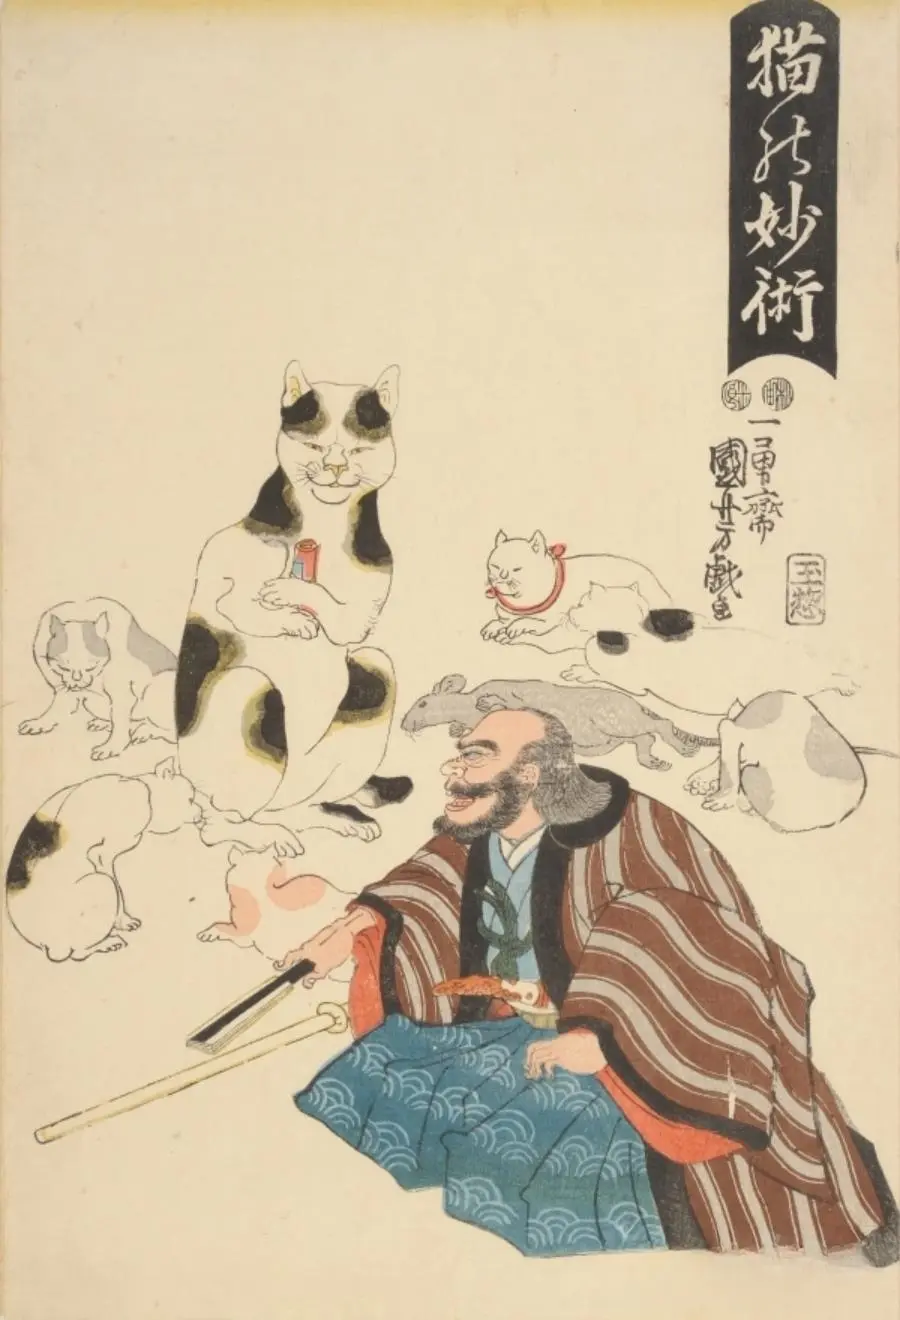 通过历史文献，了解古代日本猫与社会之间关系